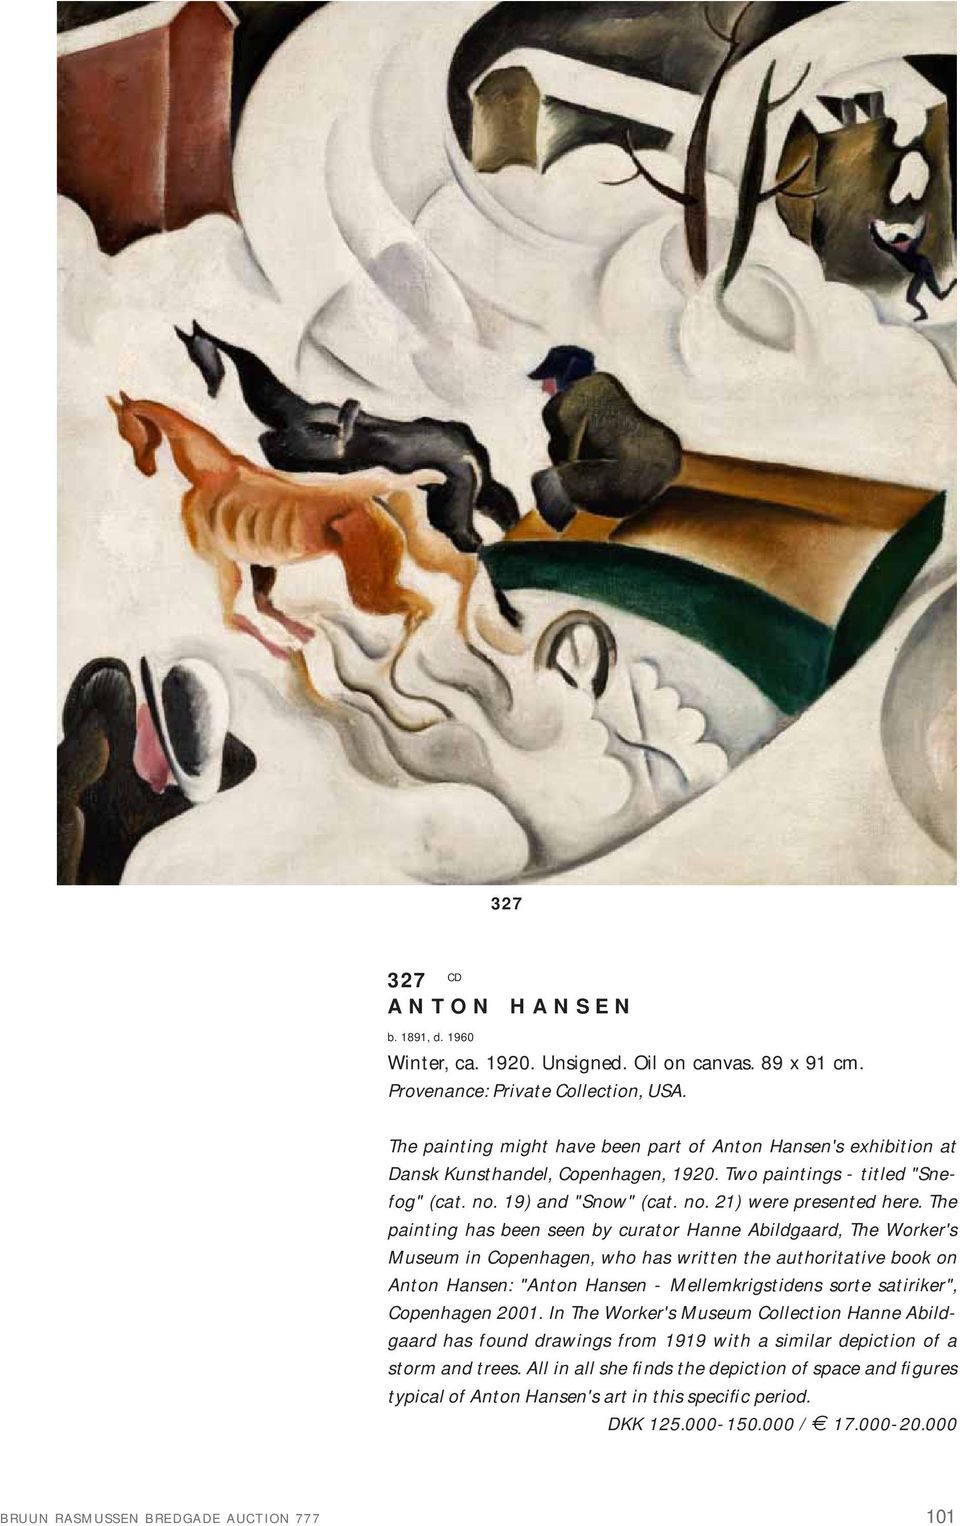 The painting has been seen by curator Hanne Abildgaard, The Worker's Museum in Copenhagen, who has written the authoritative book on Anton Hansen: "Anton Hansen - Mellemkrigstidens sorte satiriker",